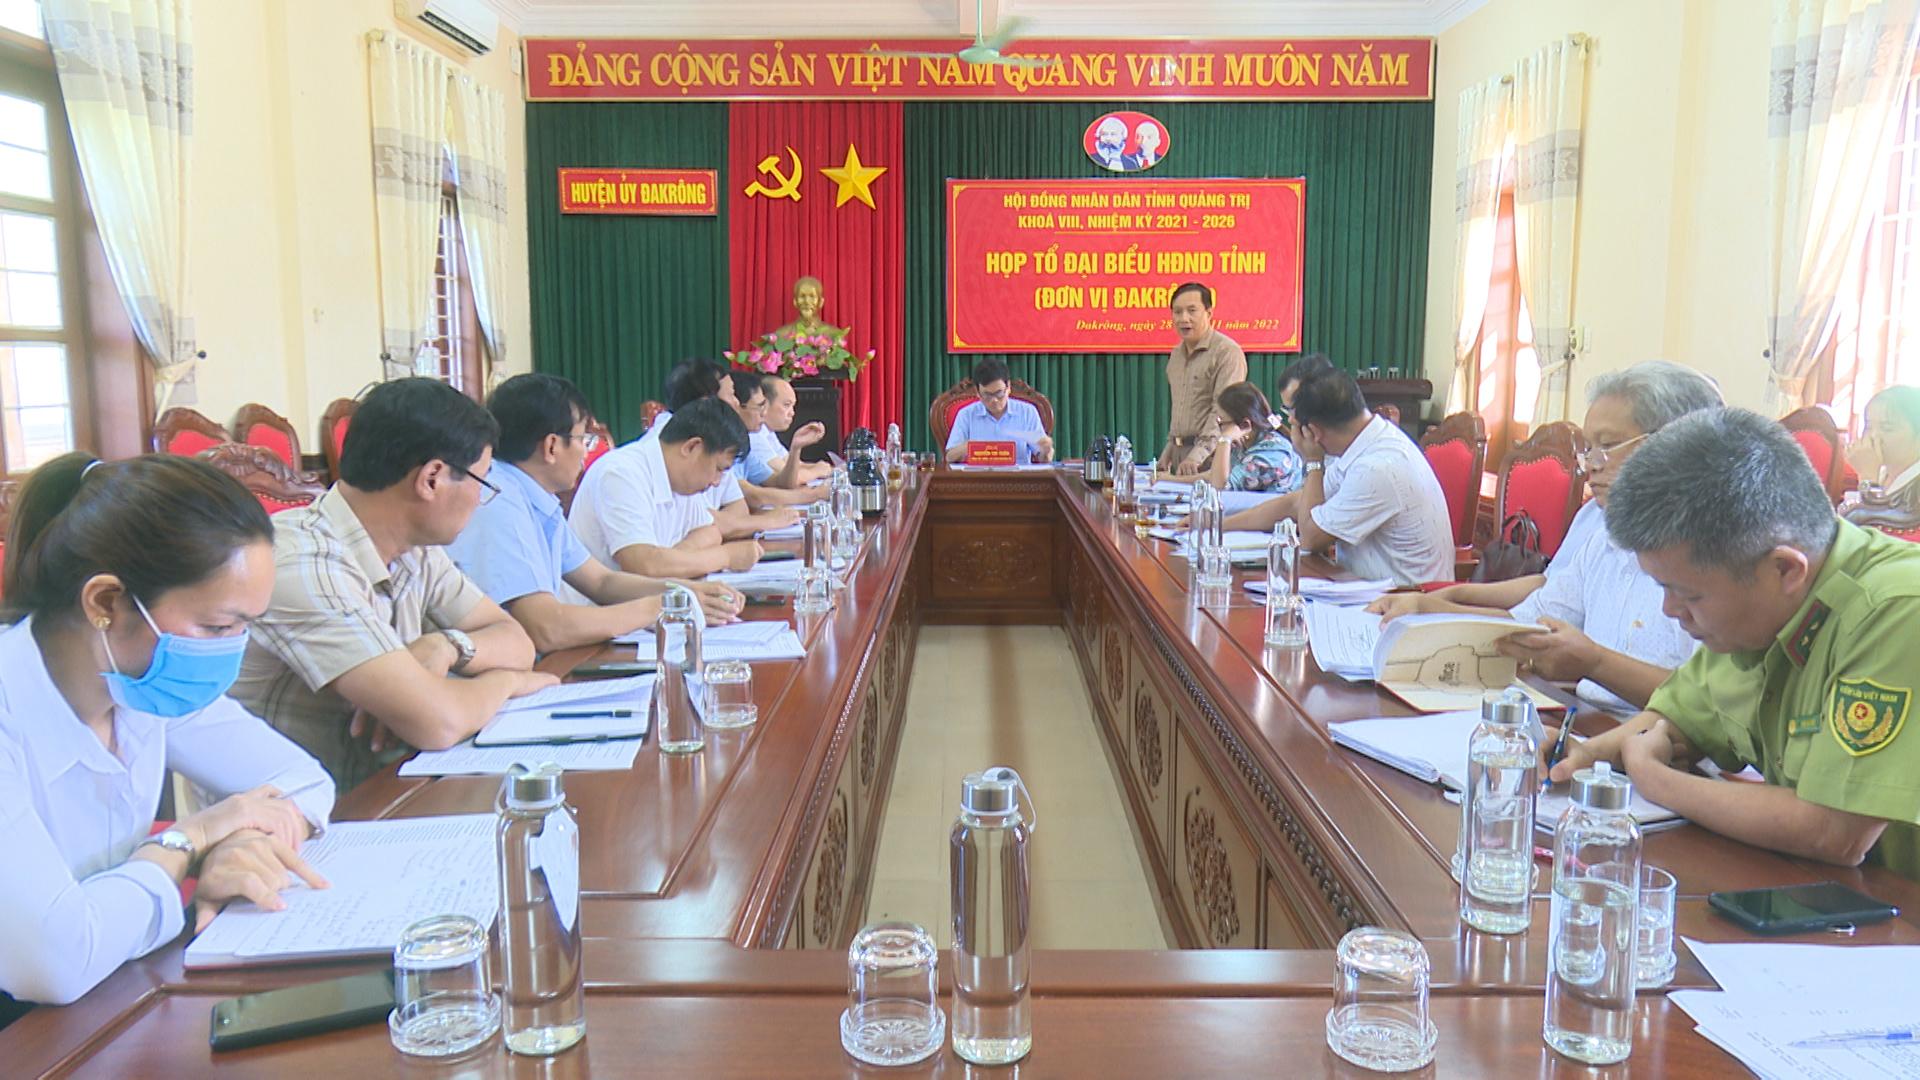 Tổ Đại biểu HĐND tỉnh tại đơn vị Đakrông làm việc với tập thể lãnh đạo UBND huyện